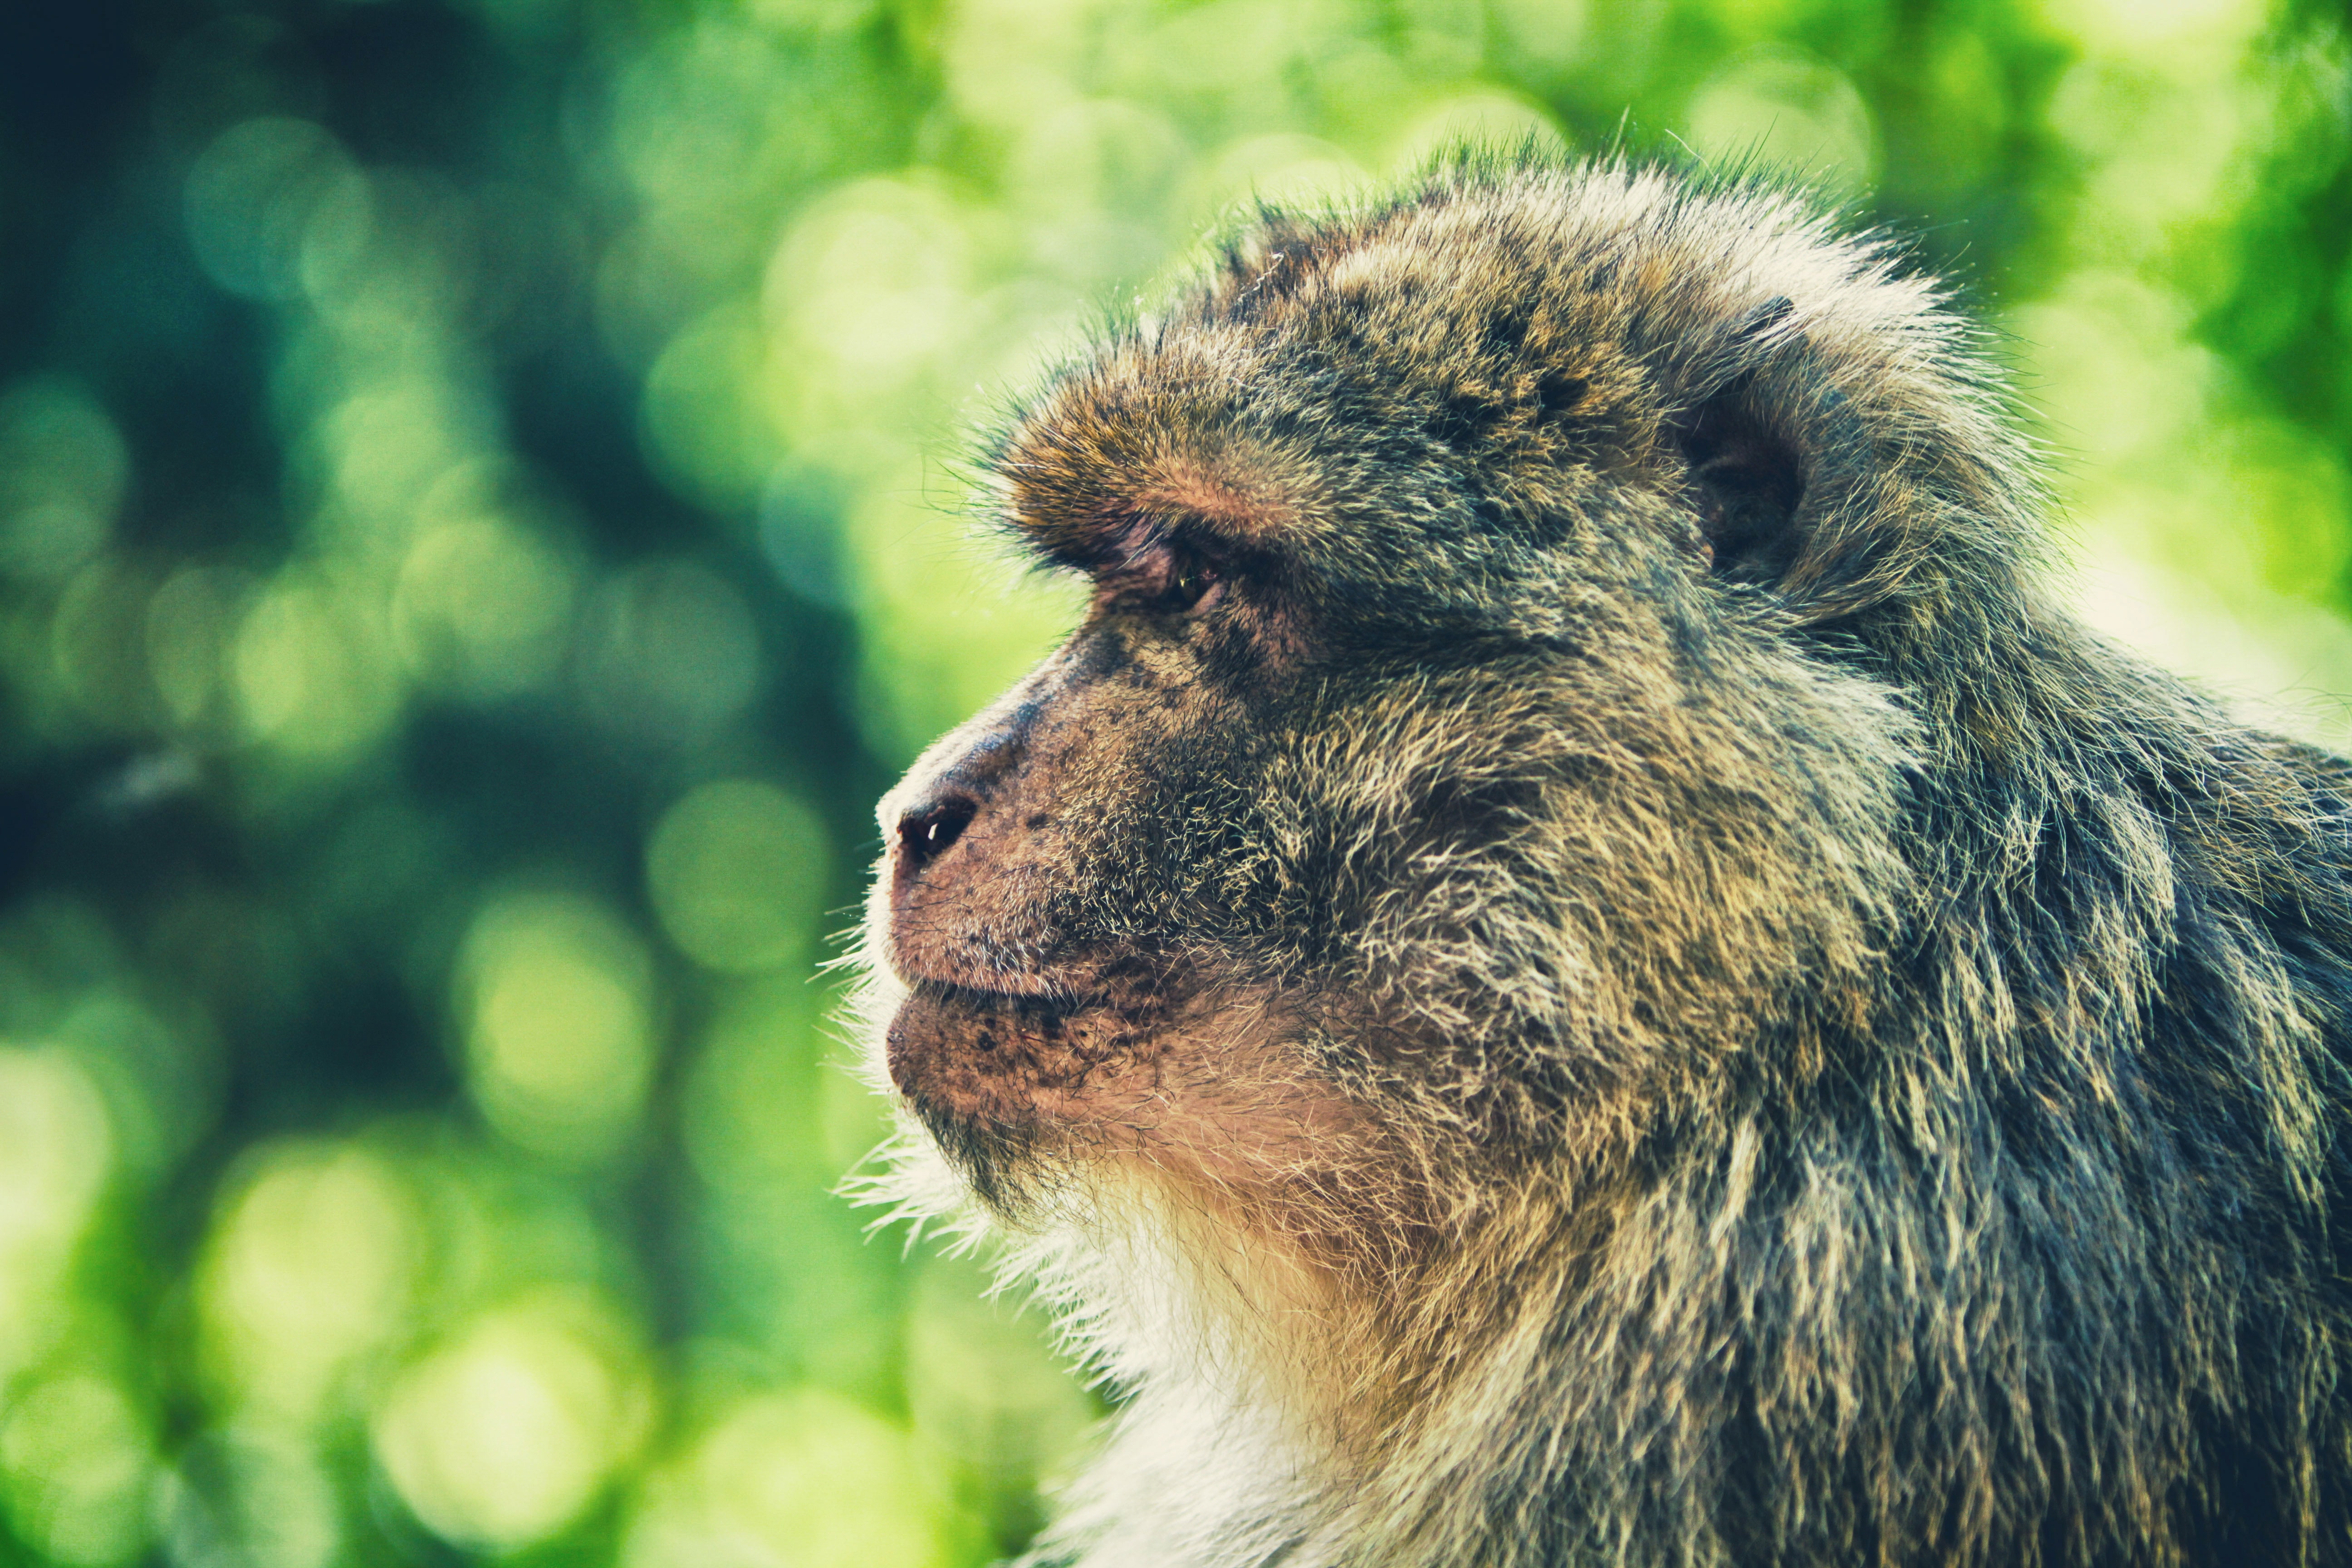 focus photo of monkey